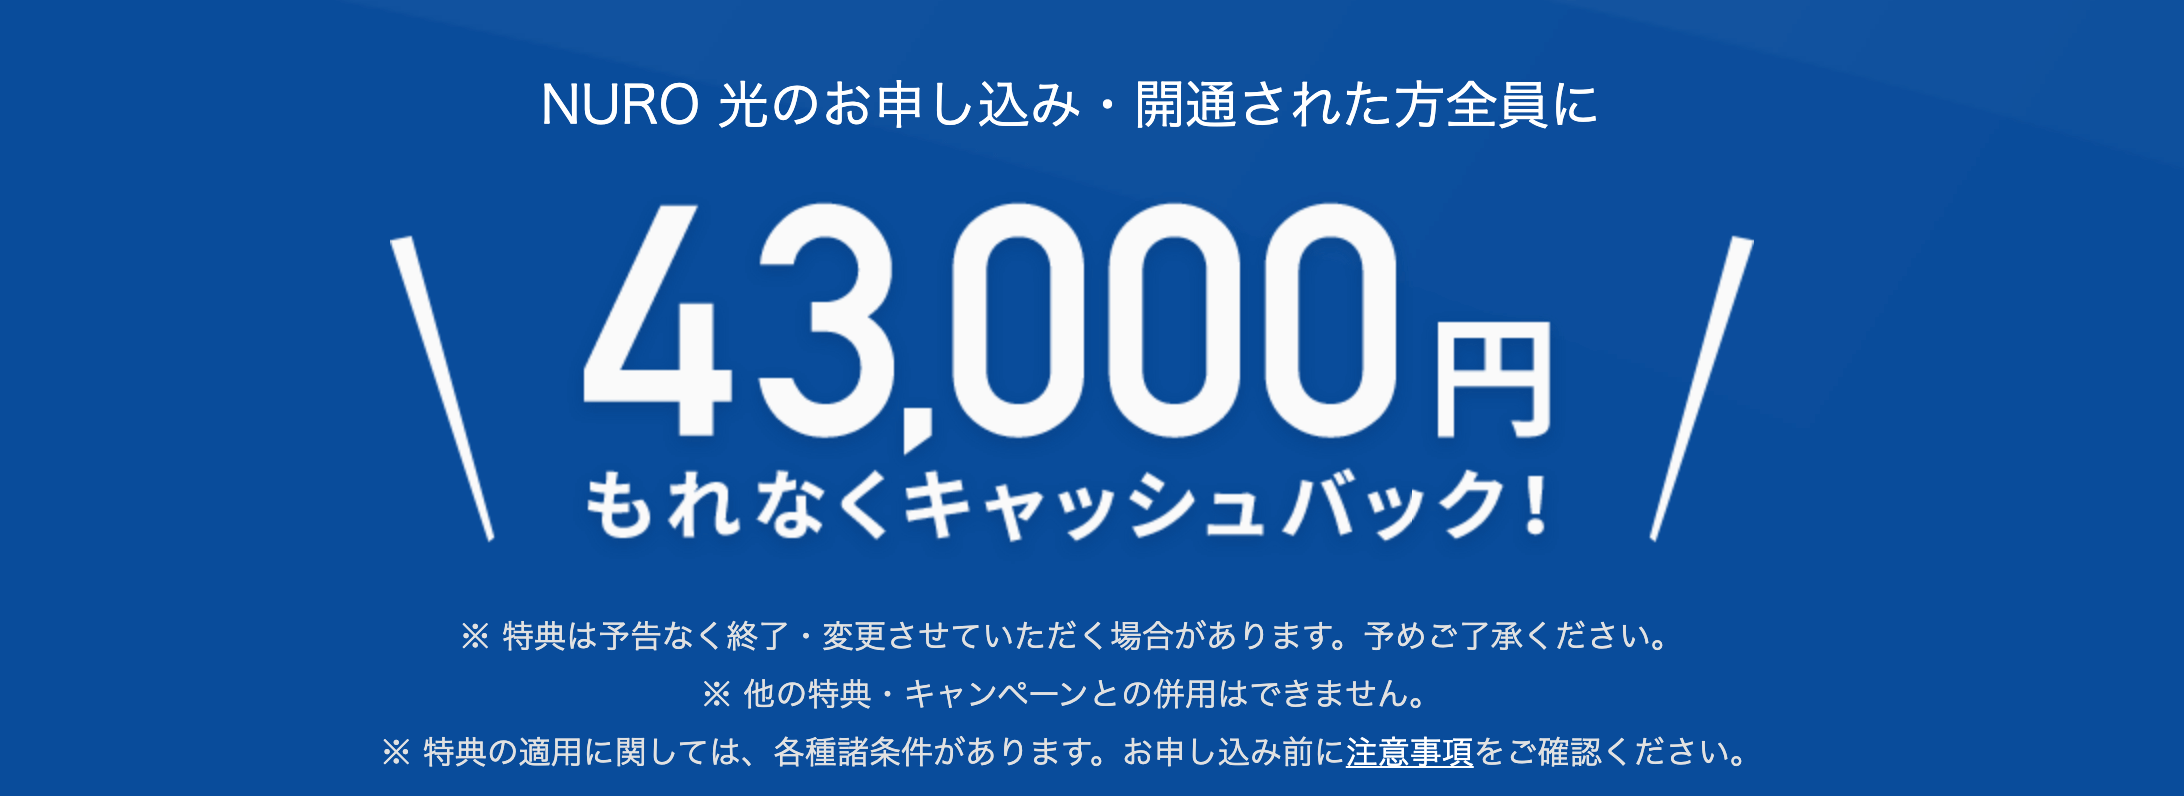 43000円キャッシュバックキャンペーン